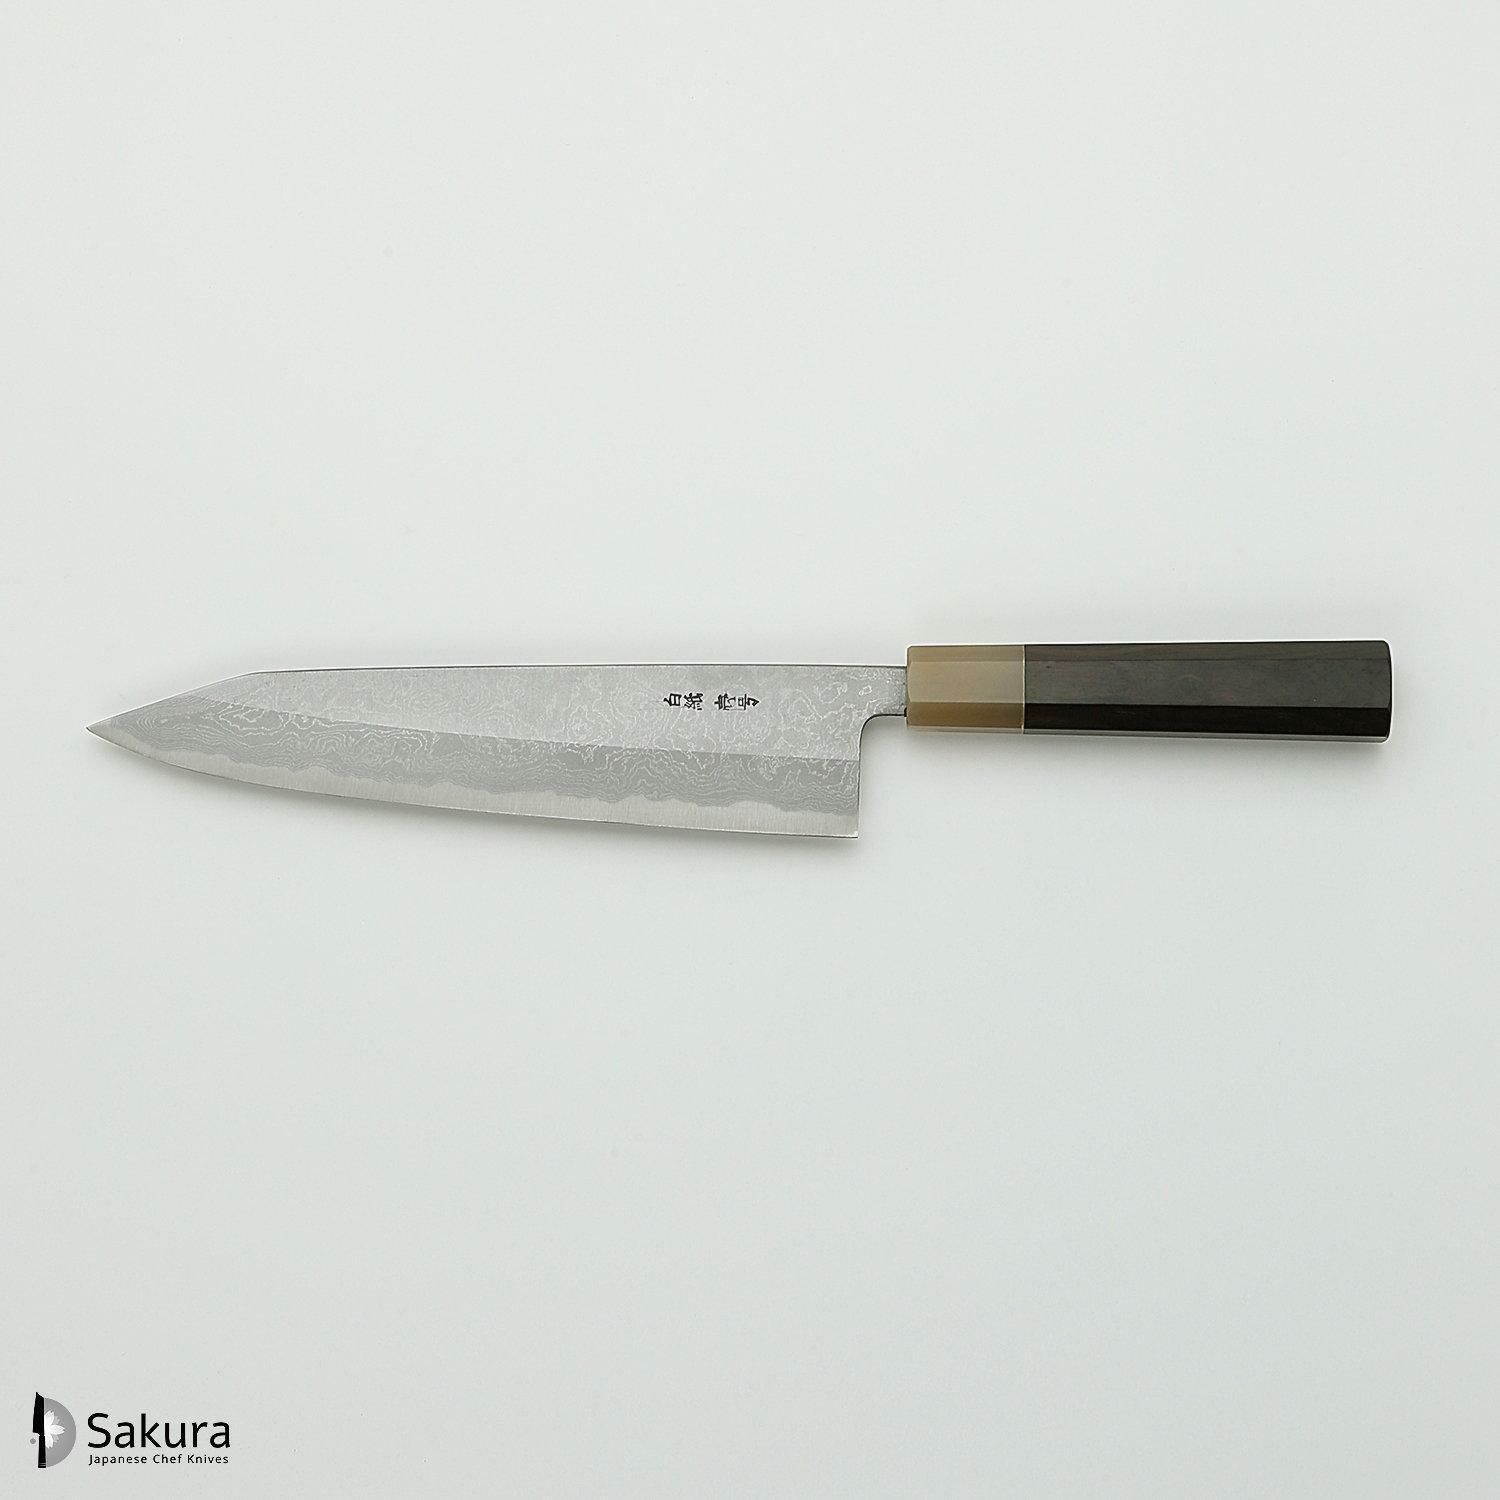 סכין שף רב-תכליתית קִּירִיצוּקֶה גִּיוּטוֹ 240מ״מ מחושלת בעבודת יד 3 שכבות: פלדת פחמן יפנית מתקדמת מסוג Shirogami #1 עטופה פלדת דמשק אל-חלד גימור דמשק יושיקאזו טאנקה יפן